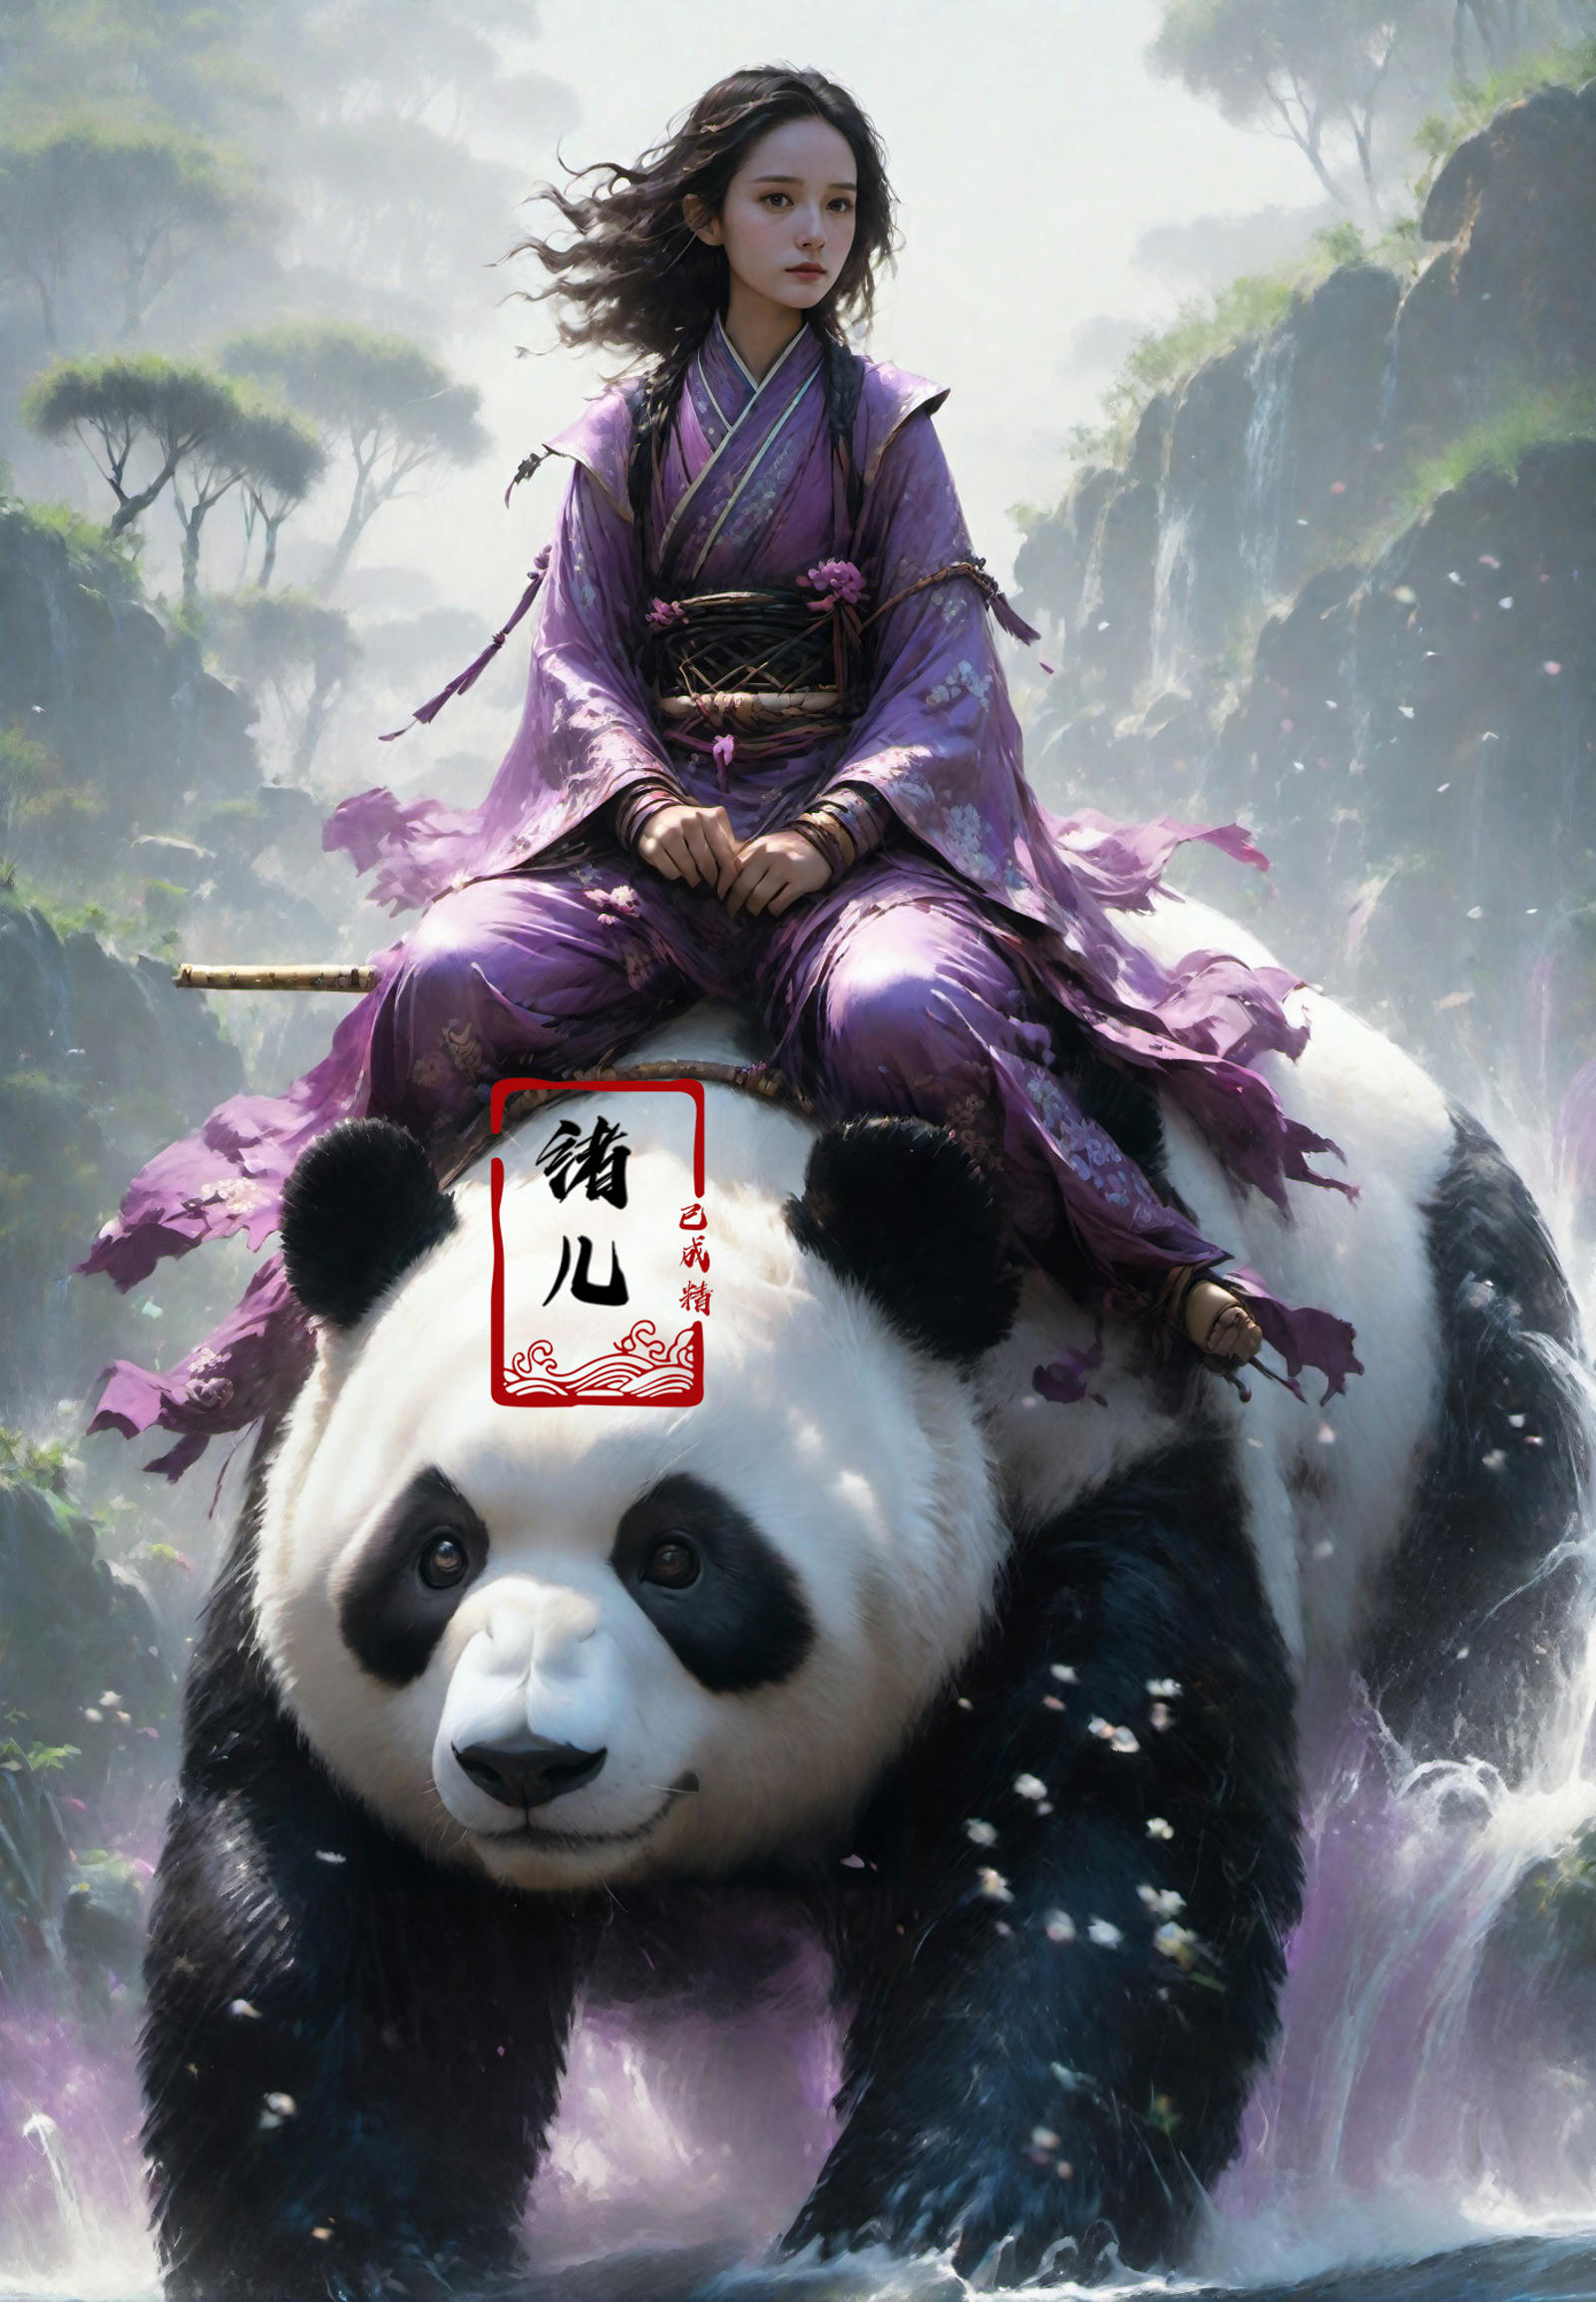 绪儿-熊猫 PANDA image by XRYCJ